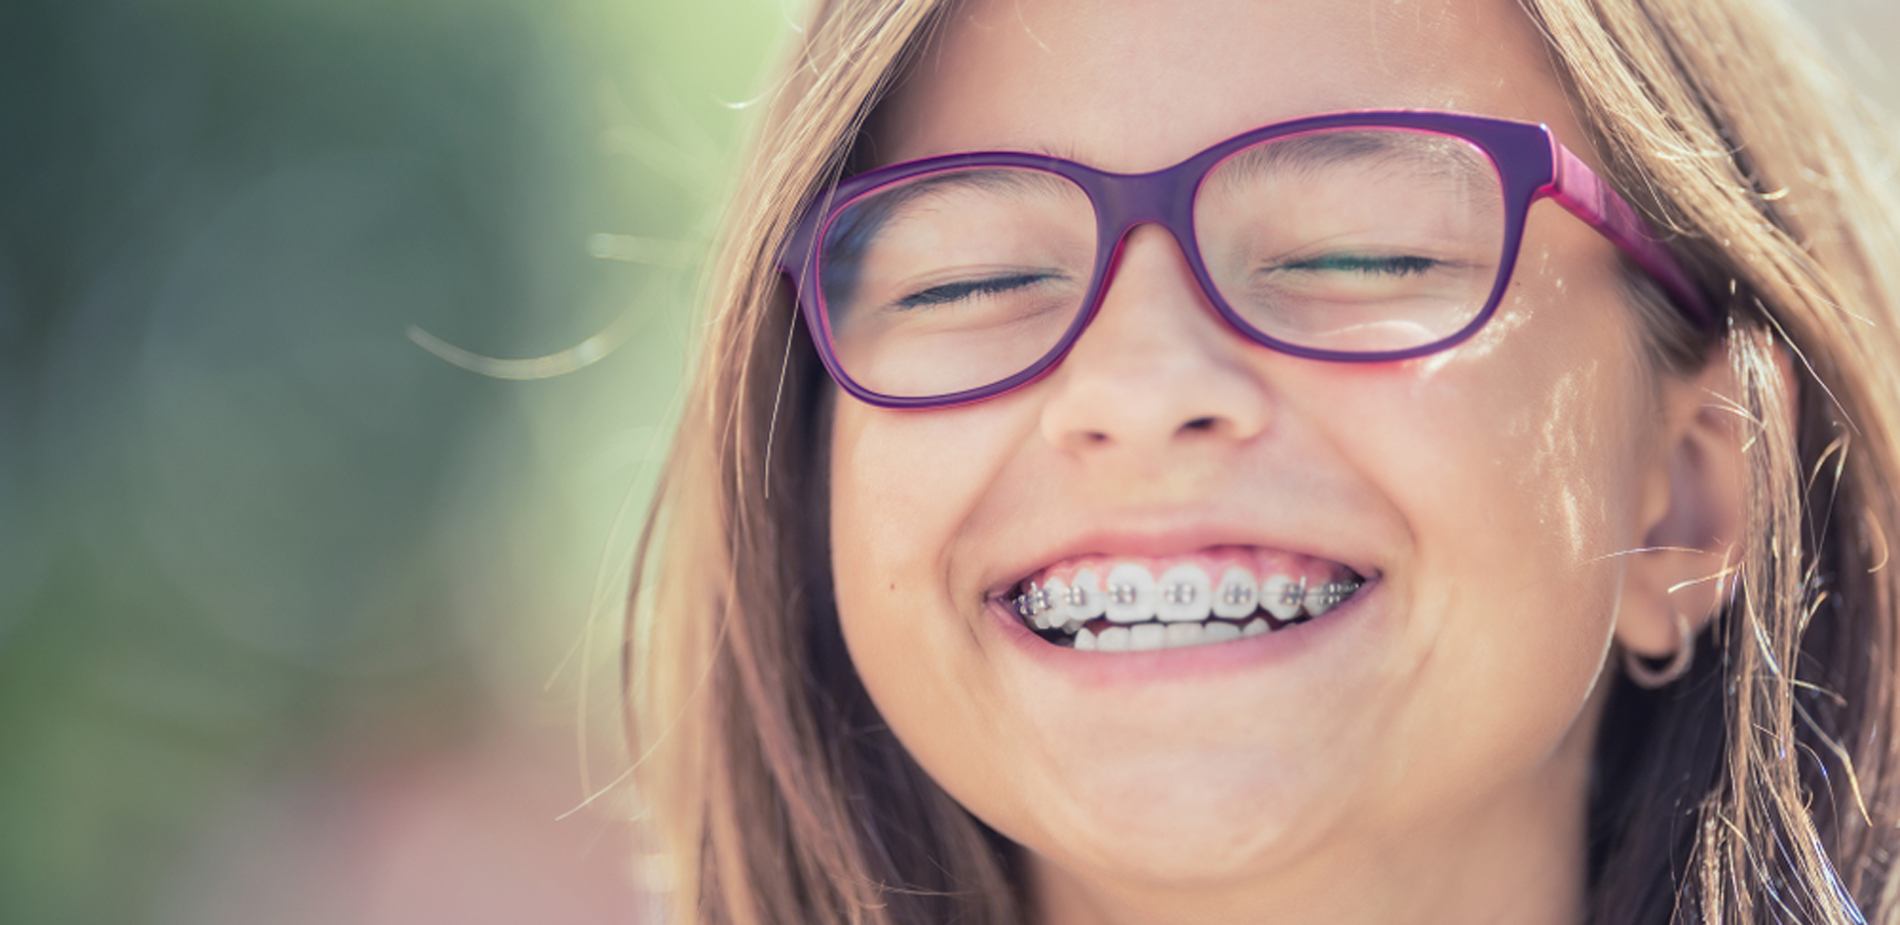 Tannregulering for barn og voksne i Vestby